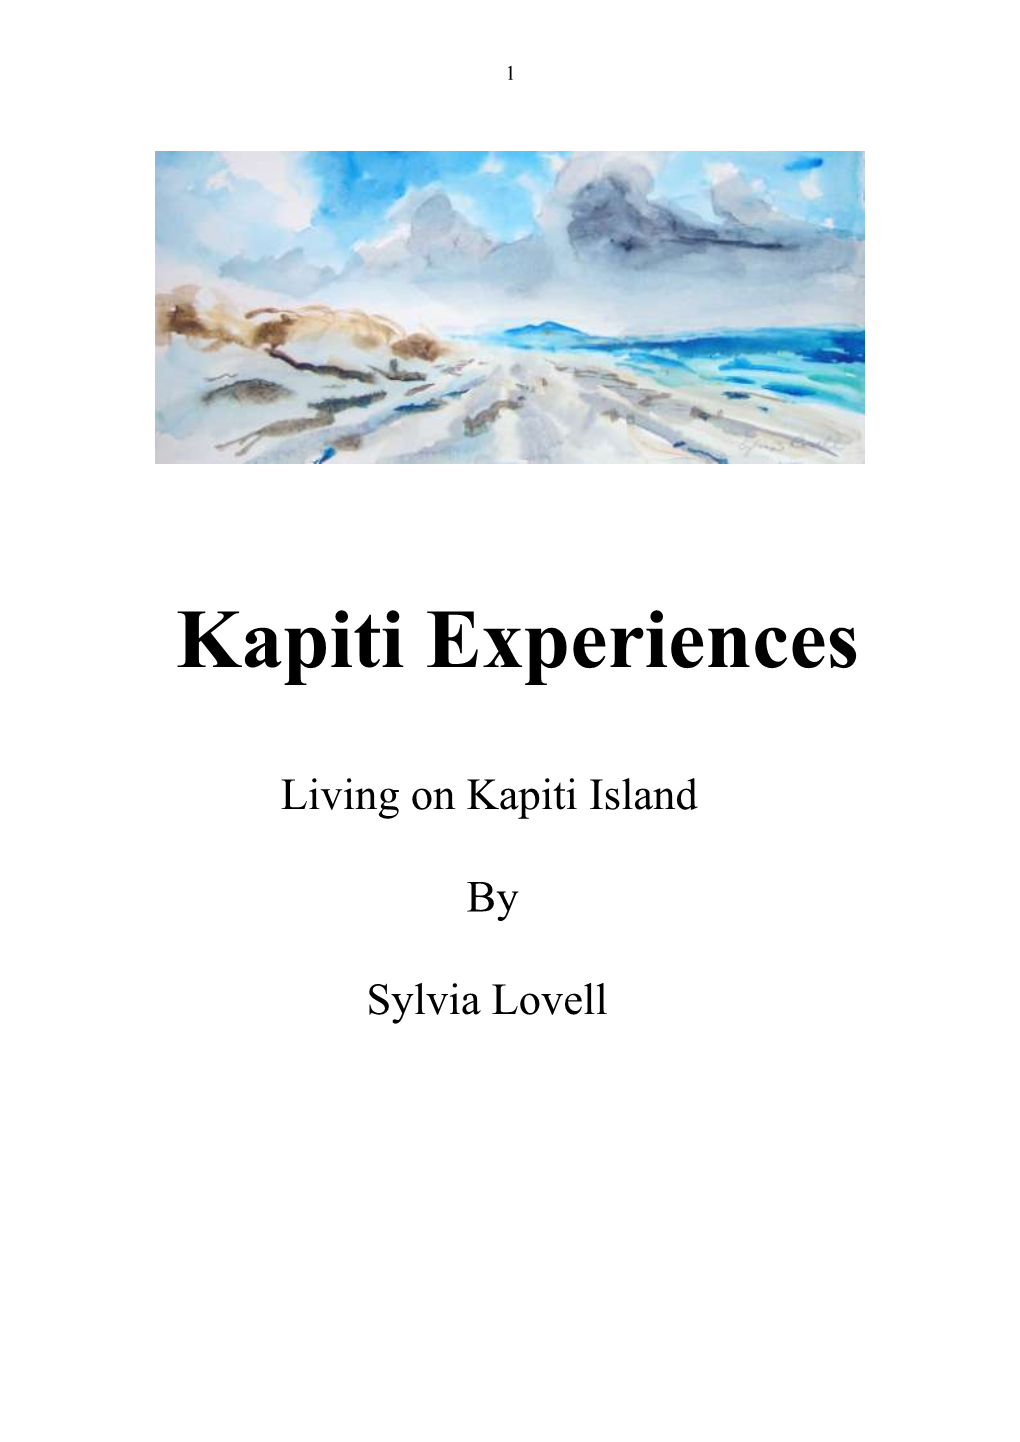 Kapiti Island Project